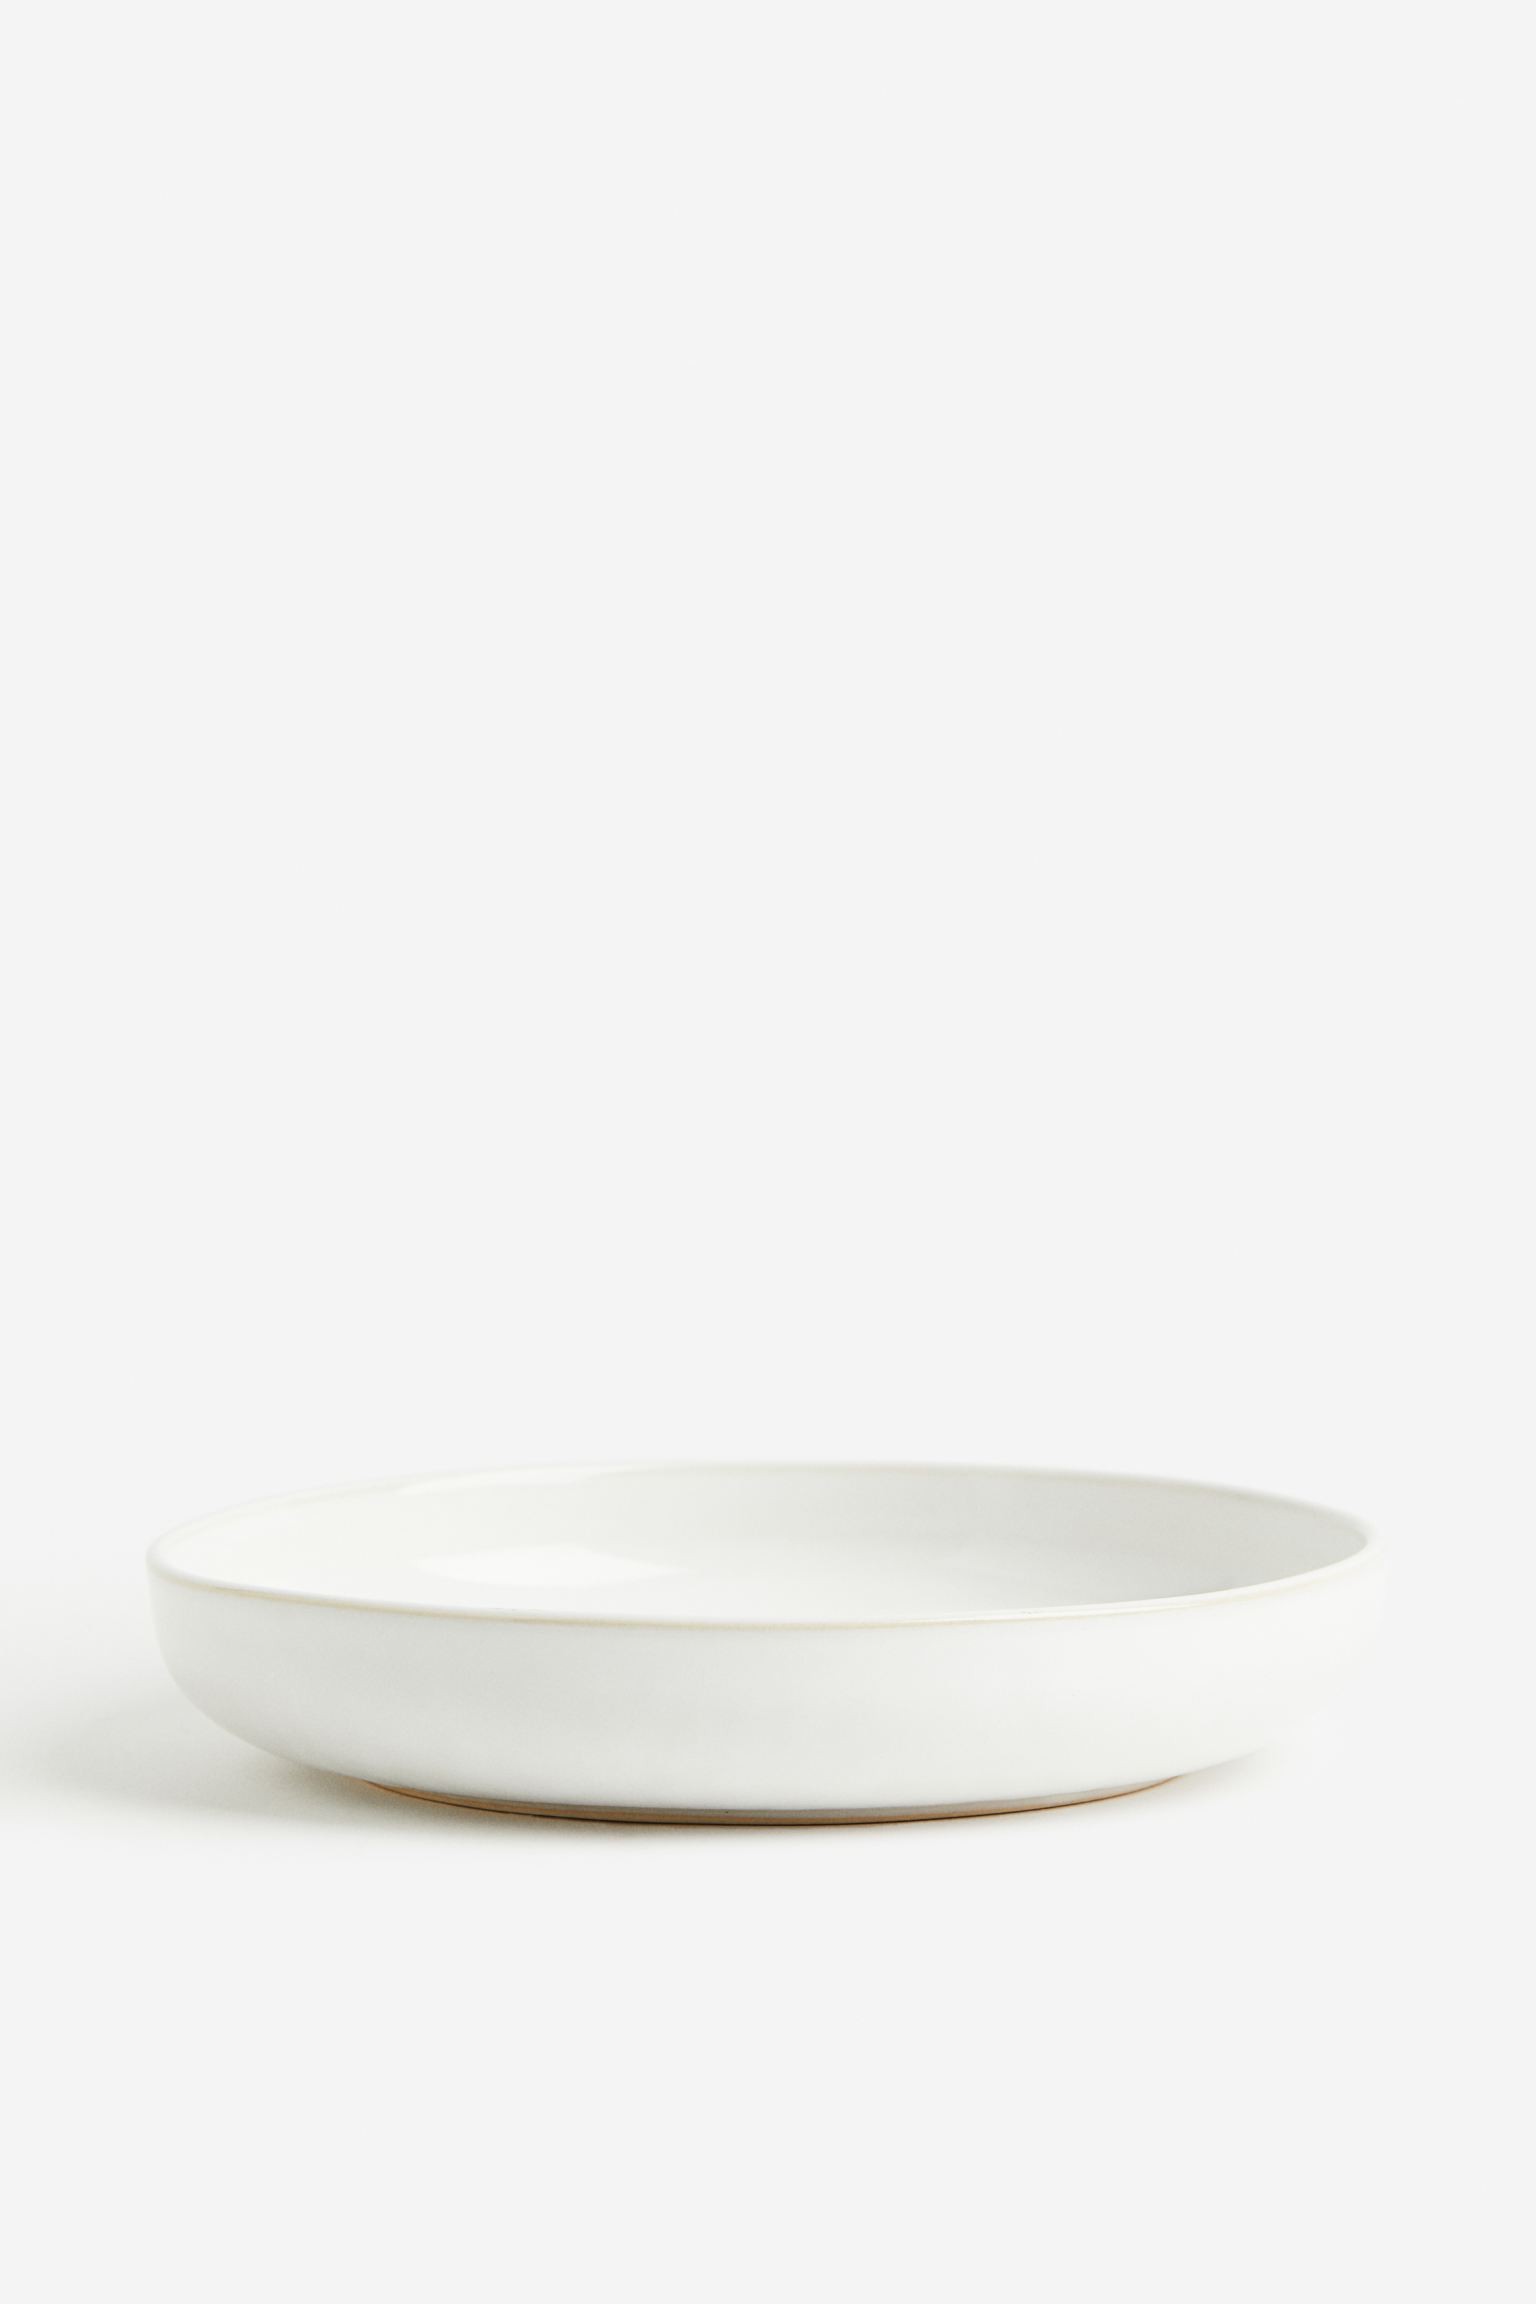 Глубокая керамическая тарелка, Натуральный белый/глянцевый